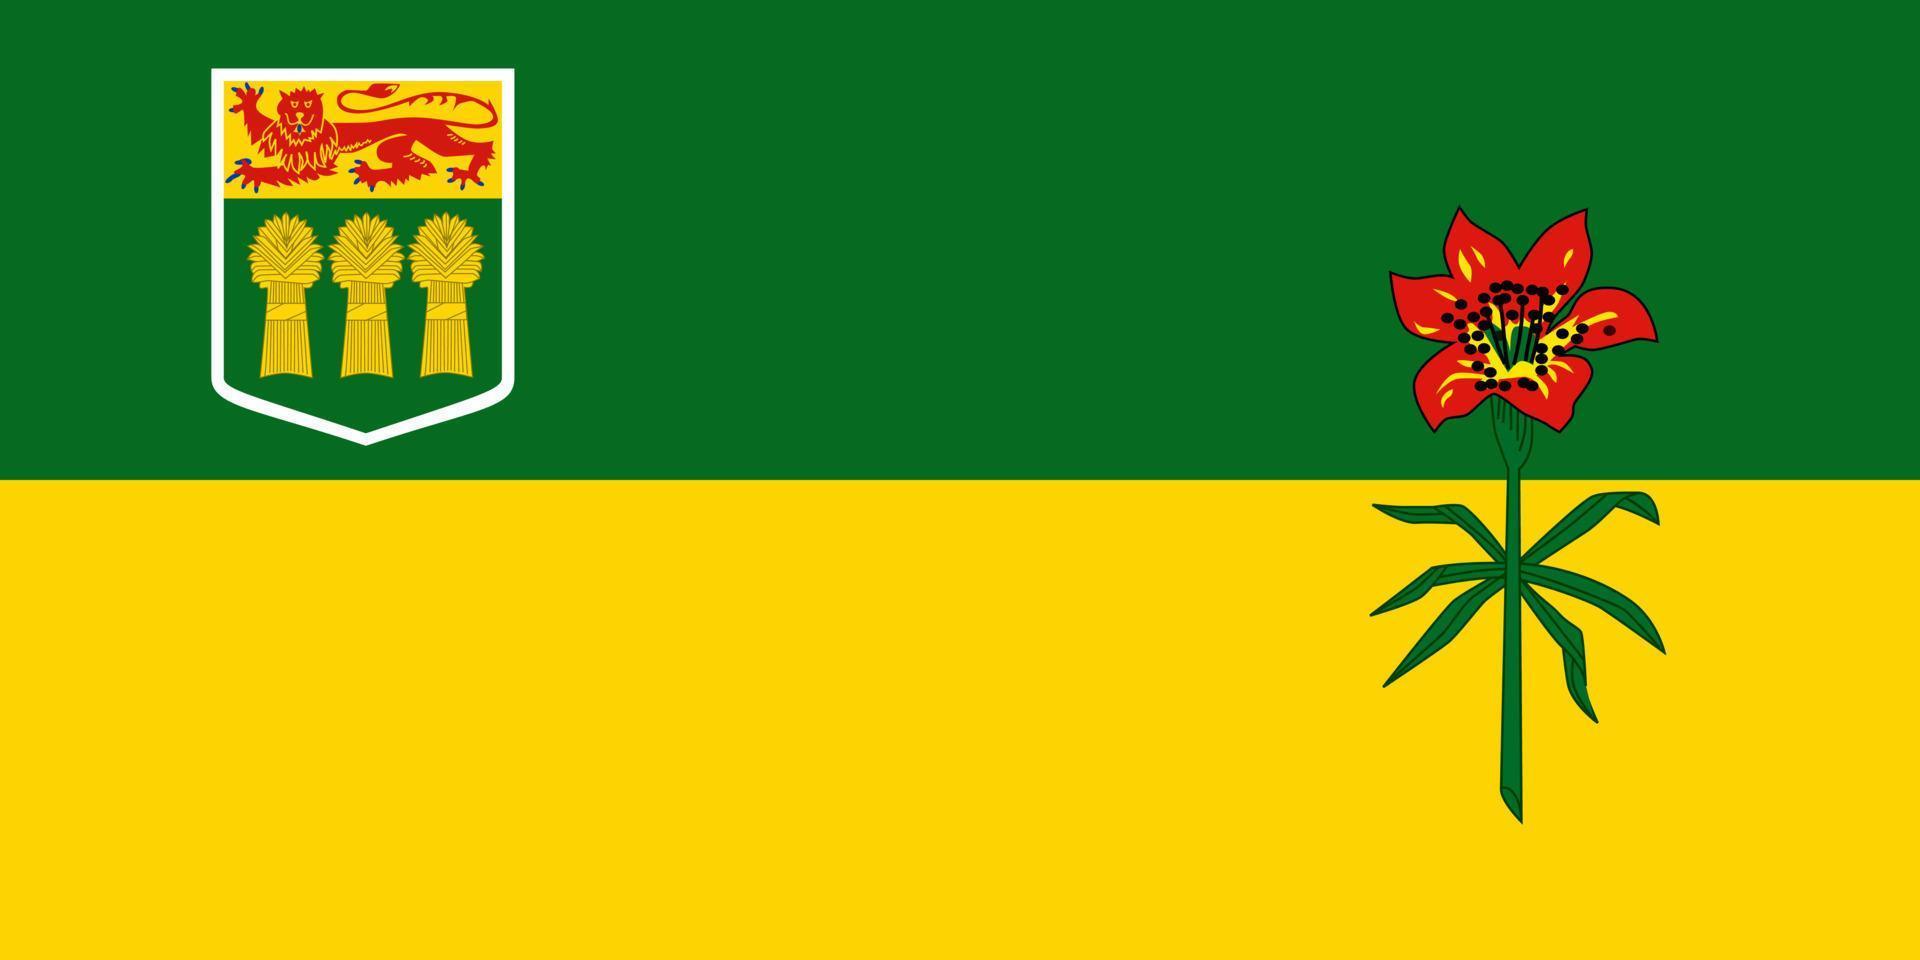 saskatchewan bandiera, Provincia di Canada. vettore illustrazione.